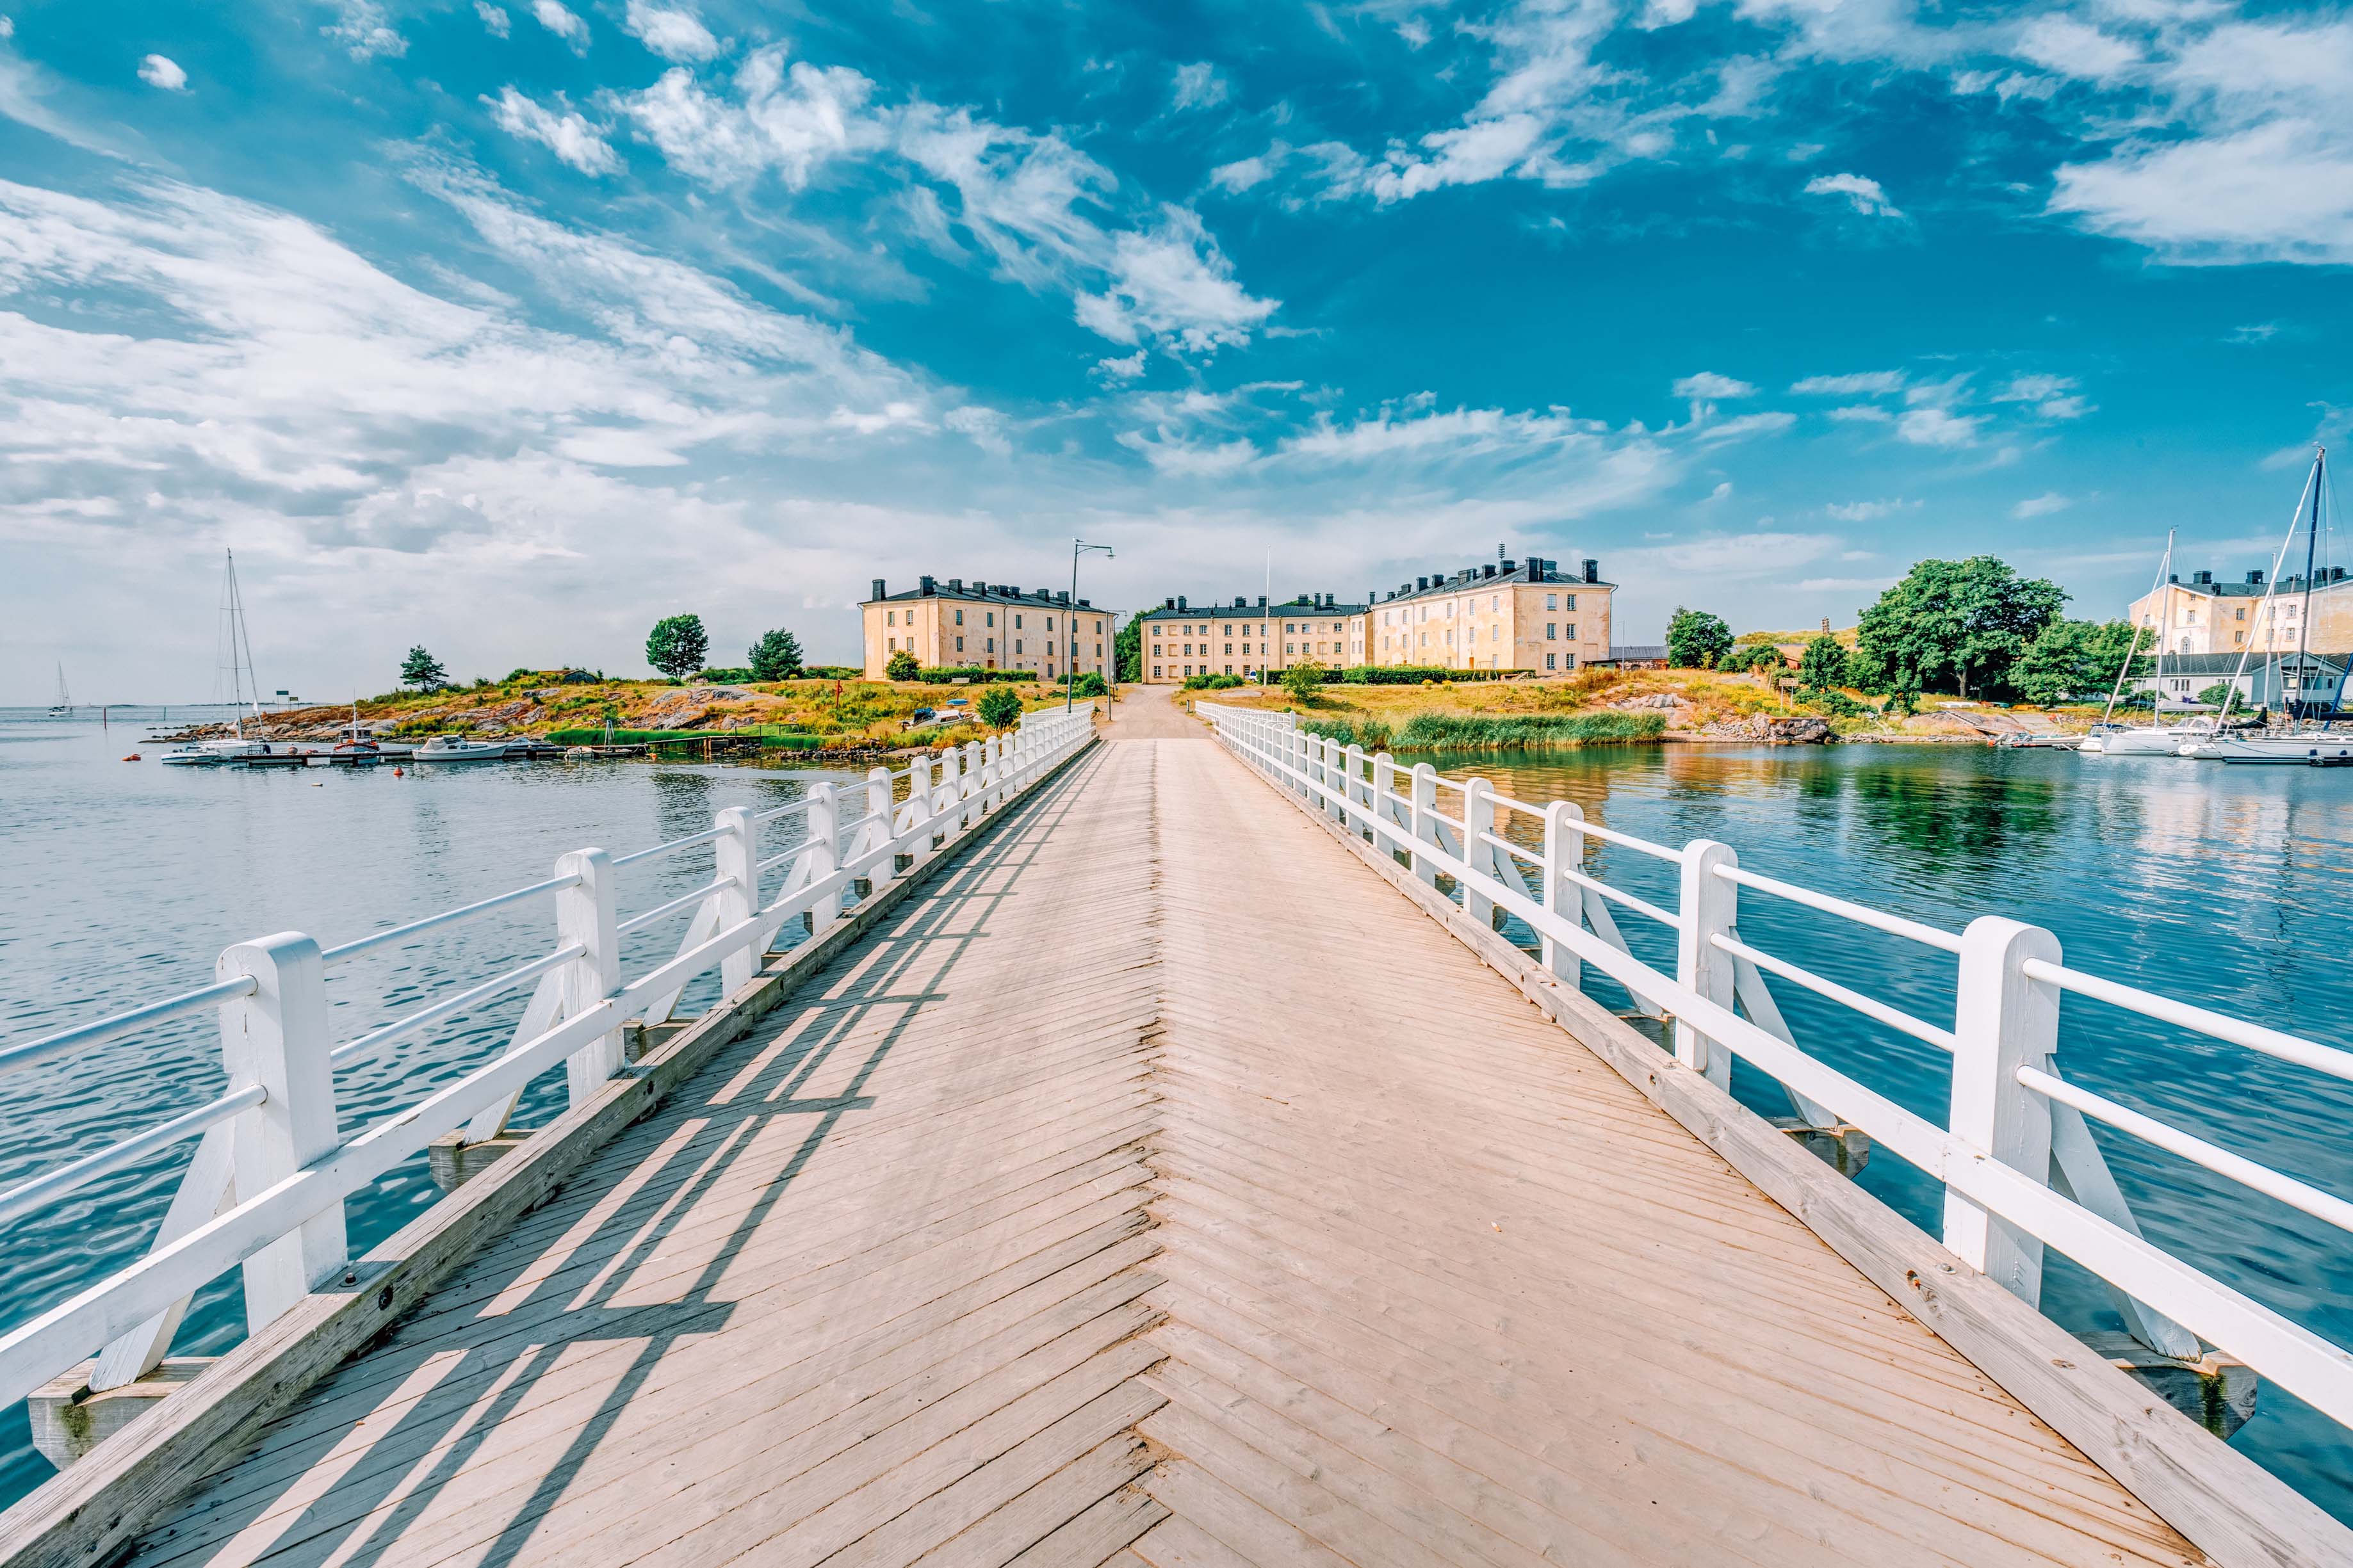 Foto panorámica sobre un puente que lleva a la isla fortaleza de Suomenlinna